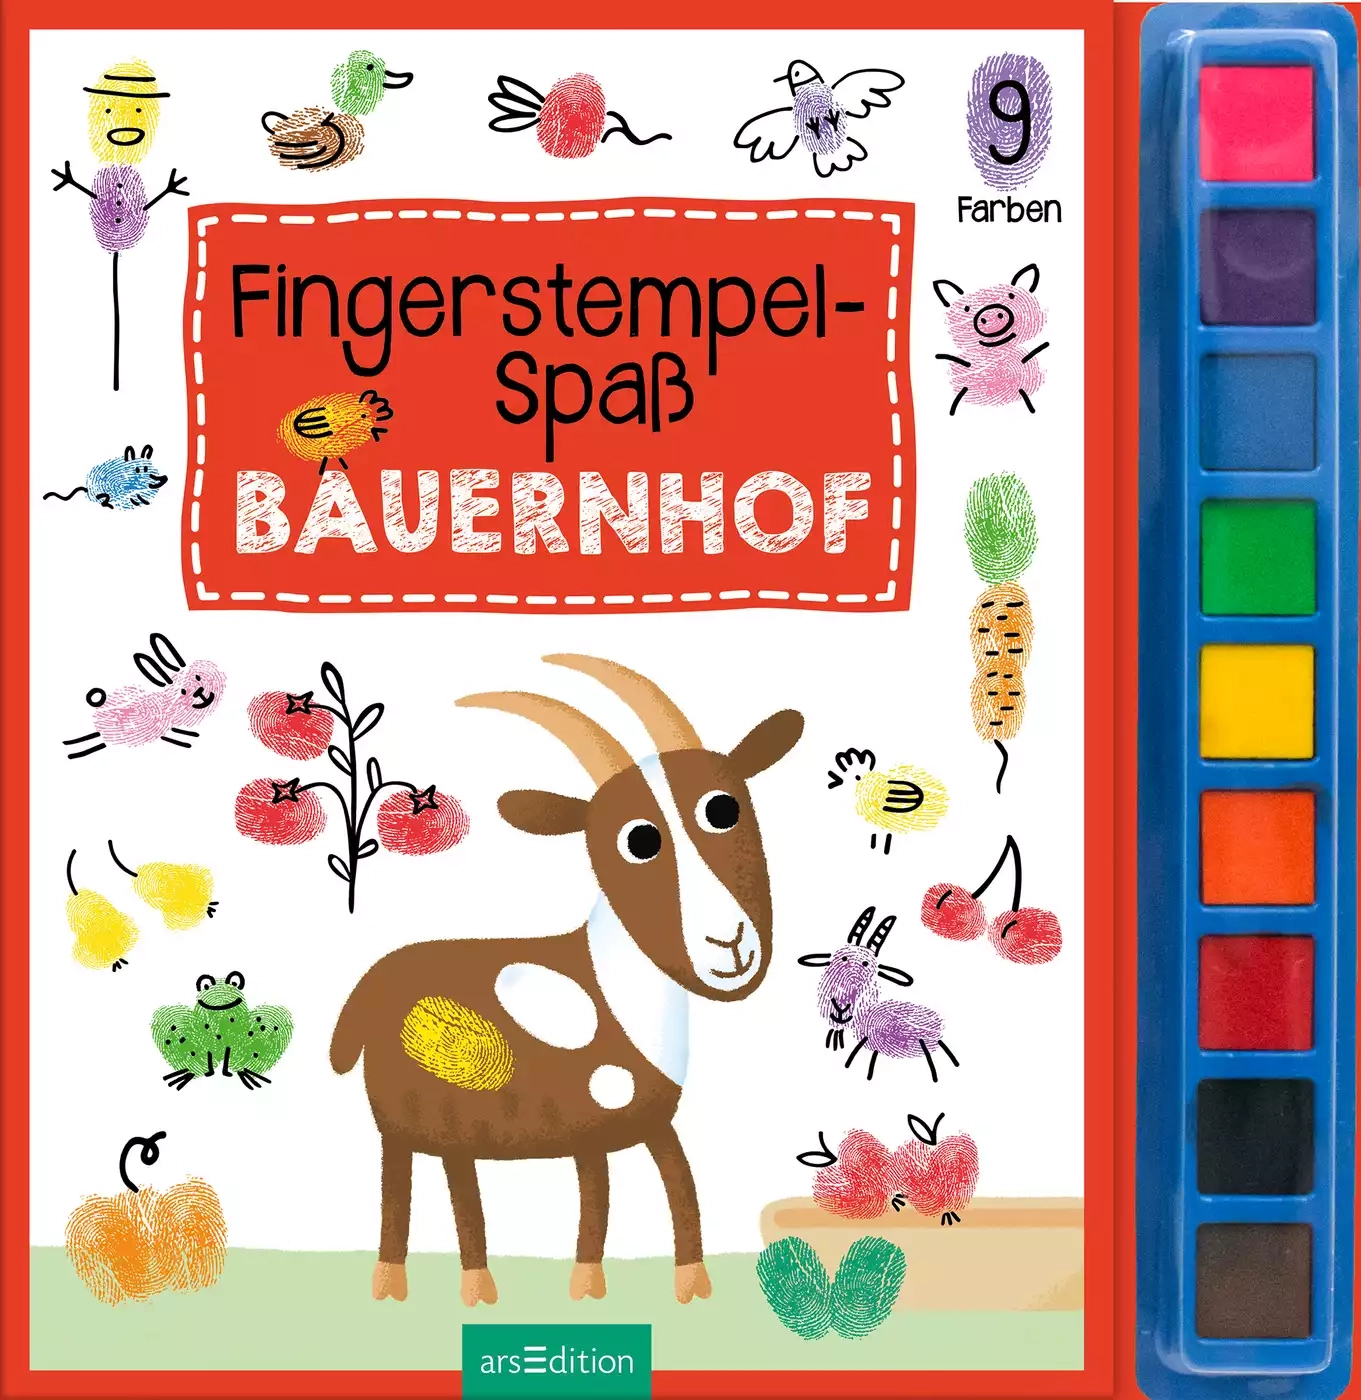 Fingerstempel-Spaß Bauernhof arsEdition 2000582213407 1